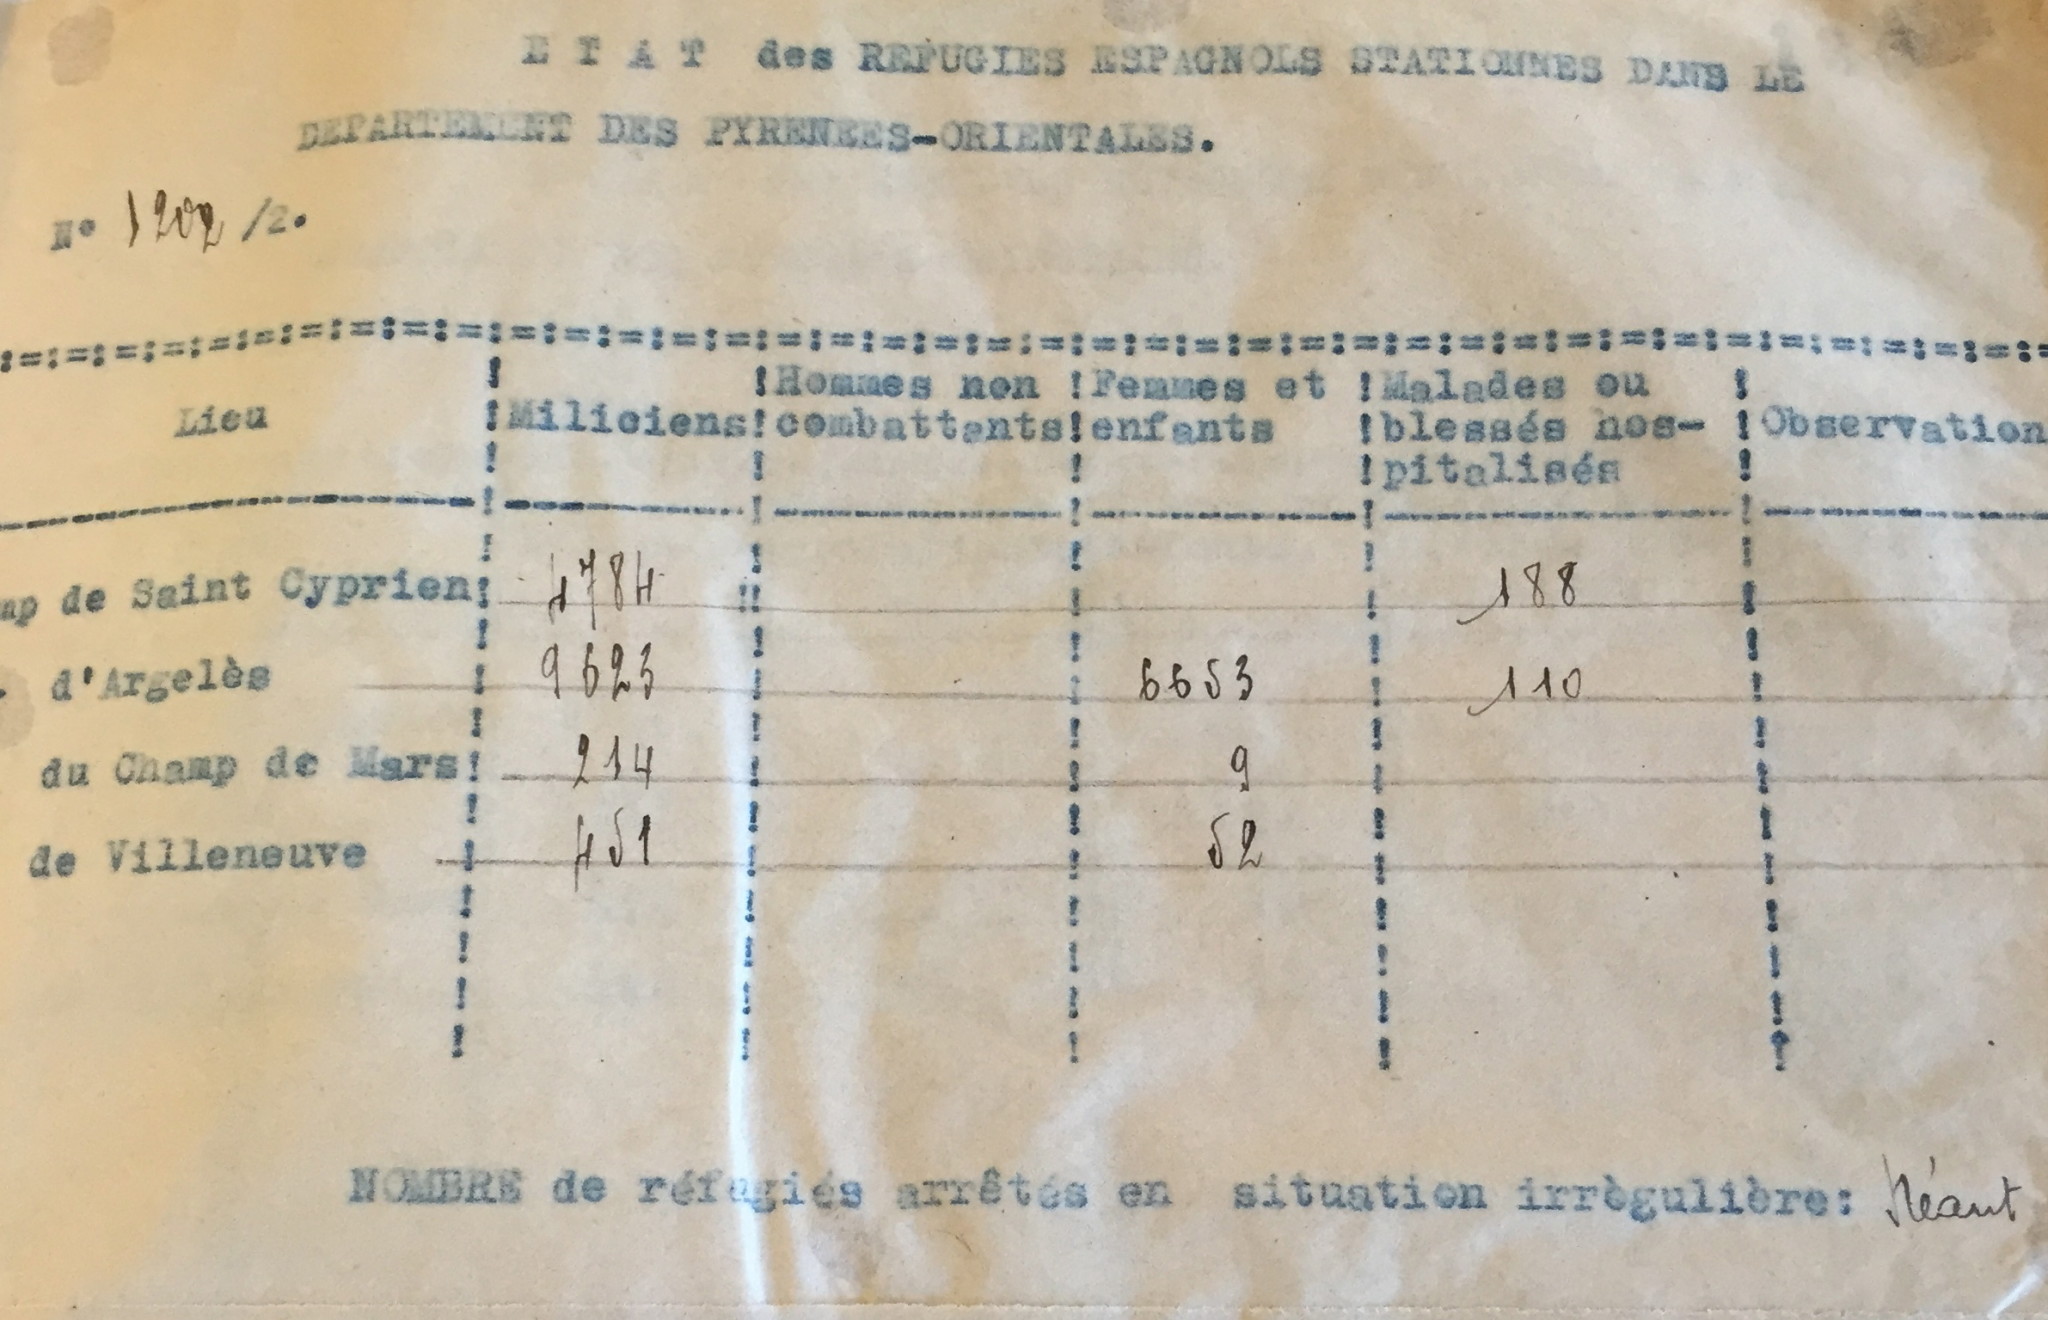 Rapport de la compagnie des Pyrénées-Orientales sur les camps d’Espagnols 31 décembre 1939. 